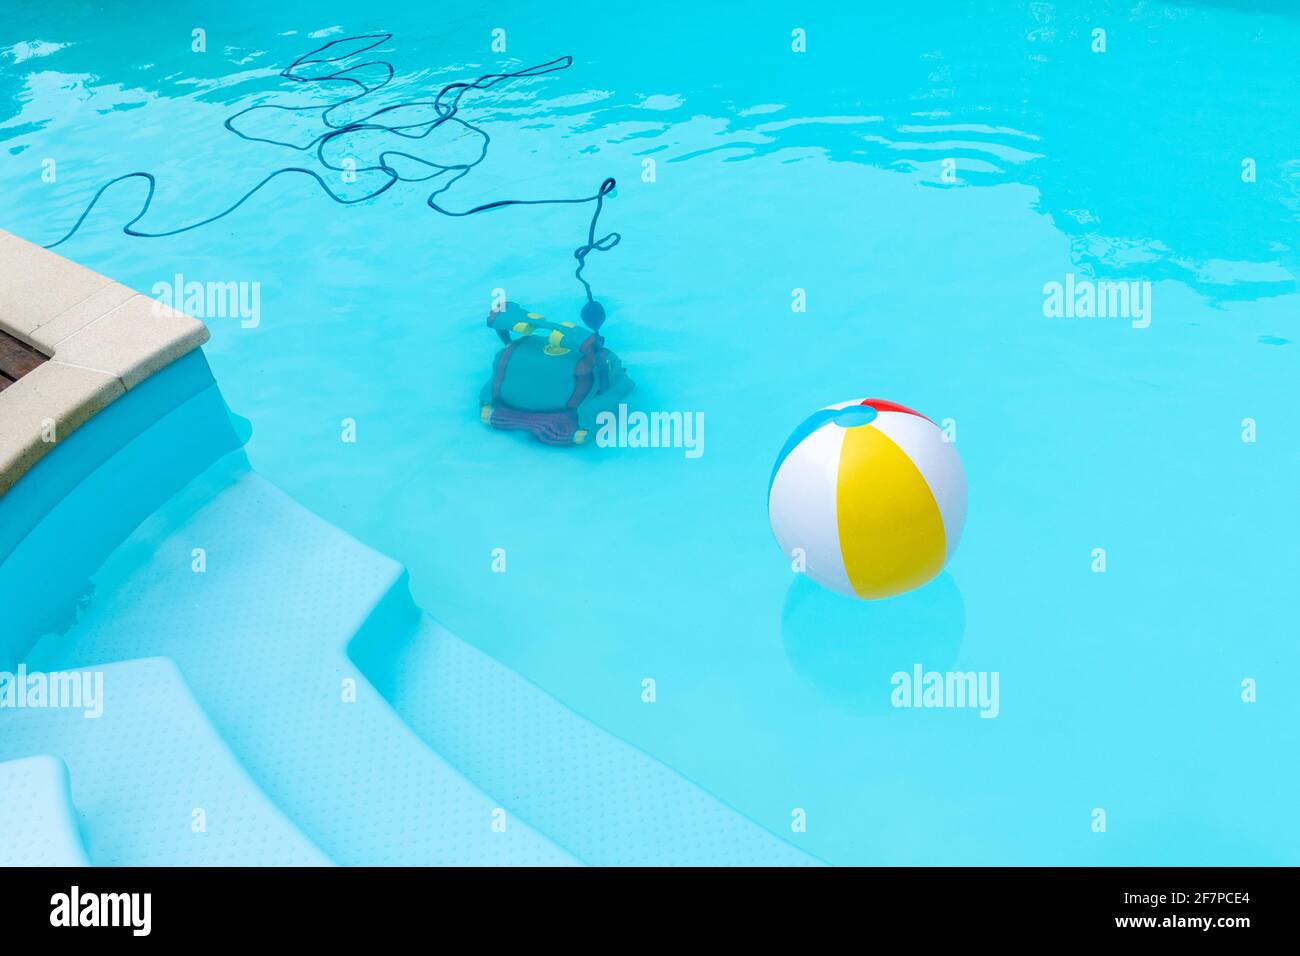 Unterwasser-Roboter Reinigung eines Schwimmbades und einer aufblasbaren Kugel schwimmend . Konzept des Wartungspools. Speicherplatz kopieren Stockfoto